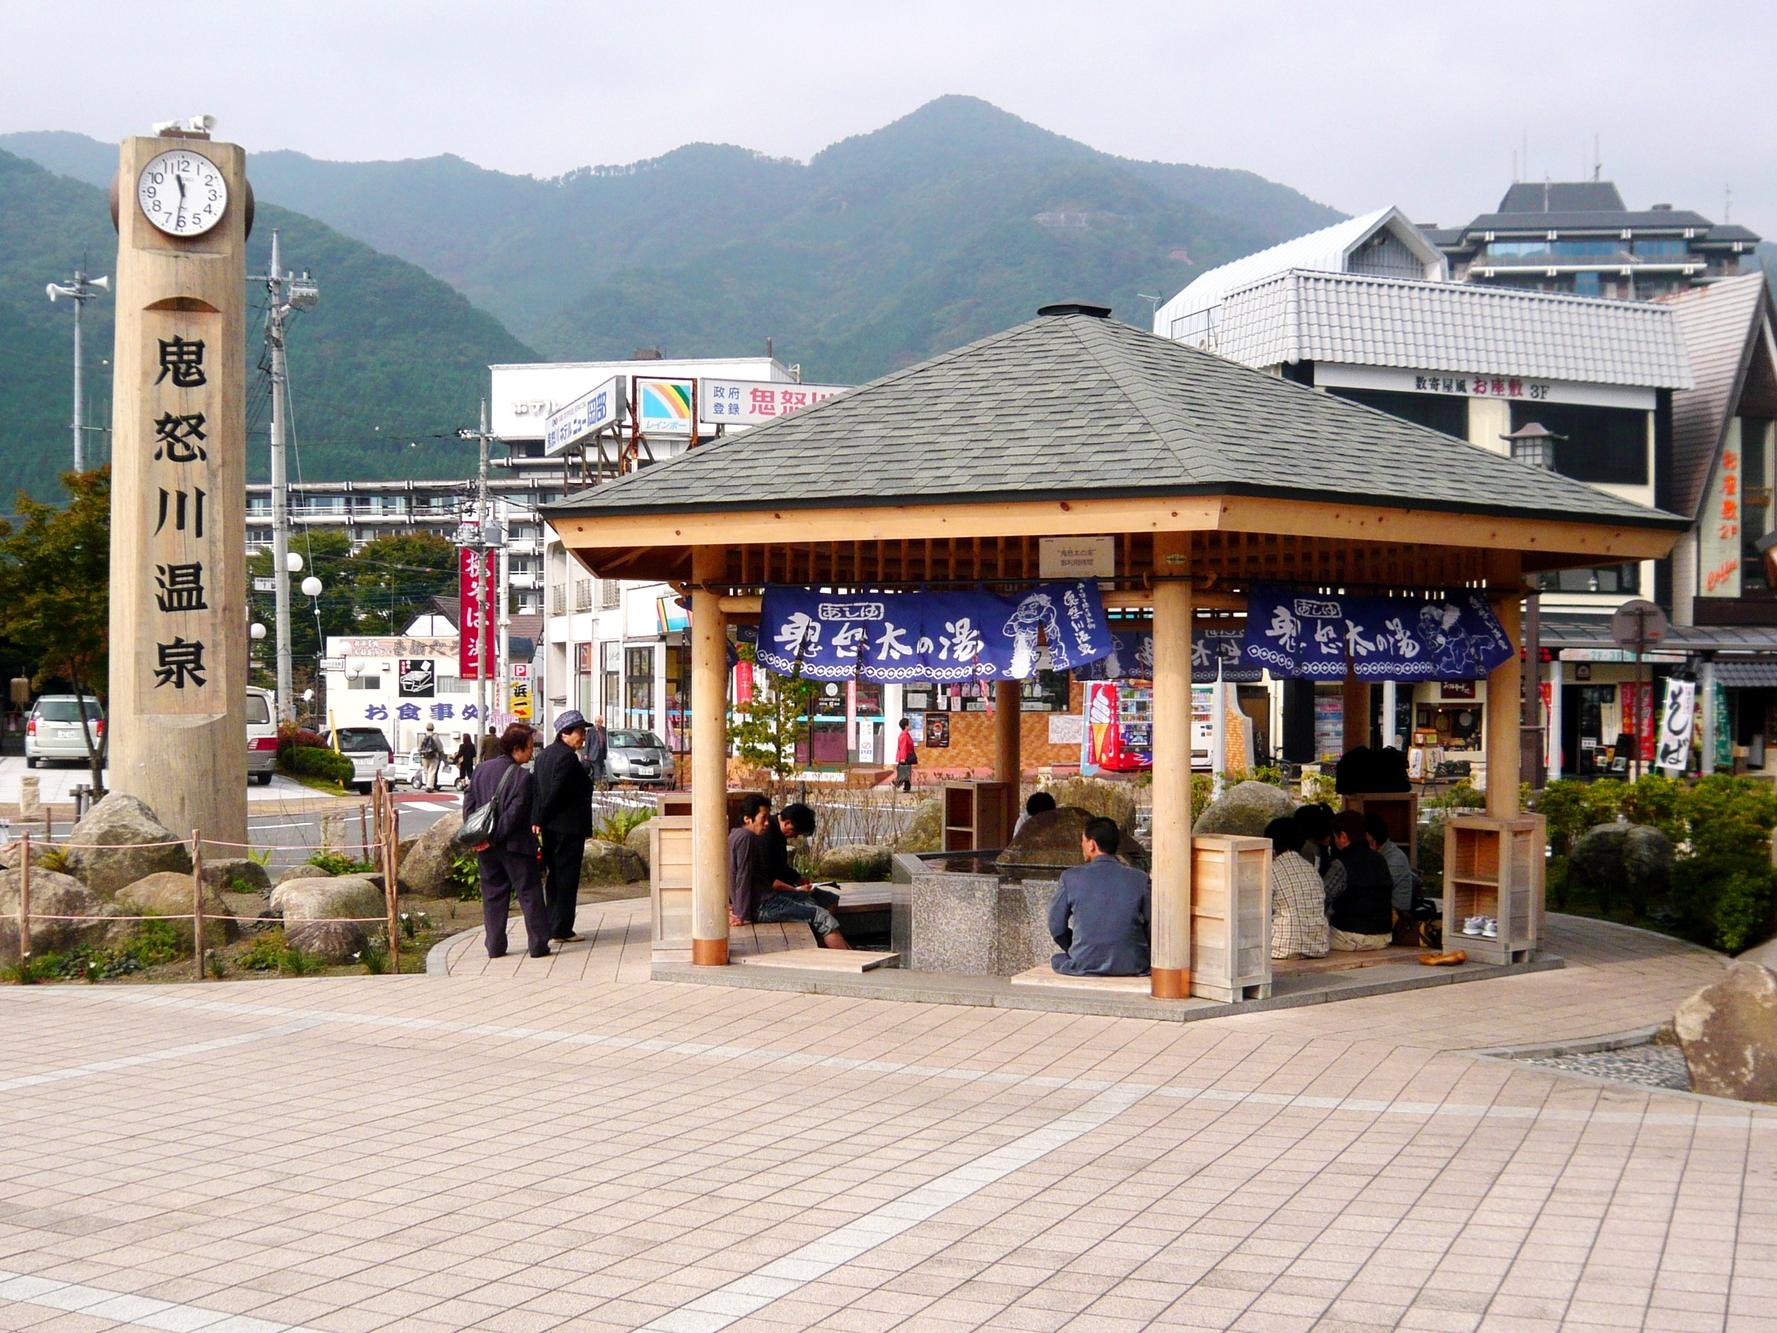 鬼怒川温泉駅の目の前にある無料の足湯施設でまずはほっこり